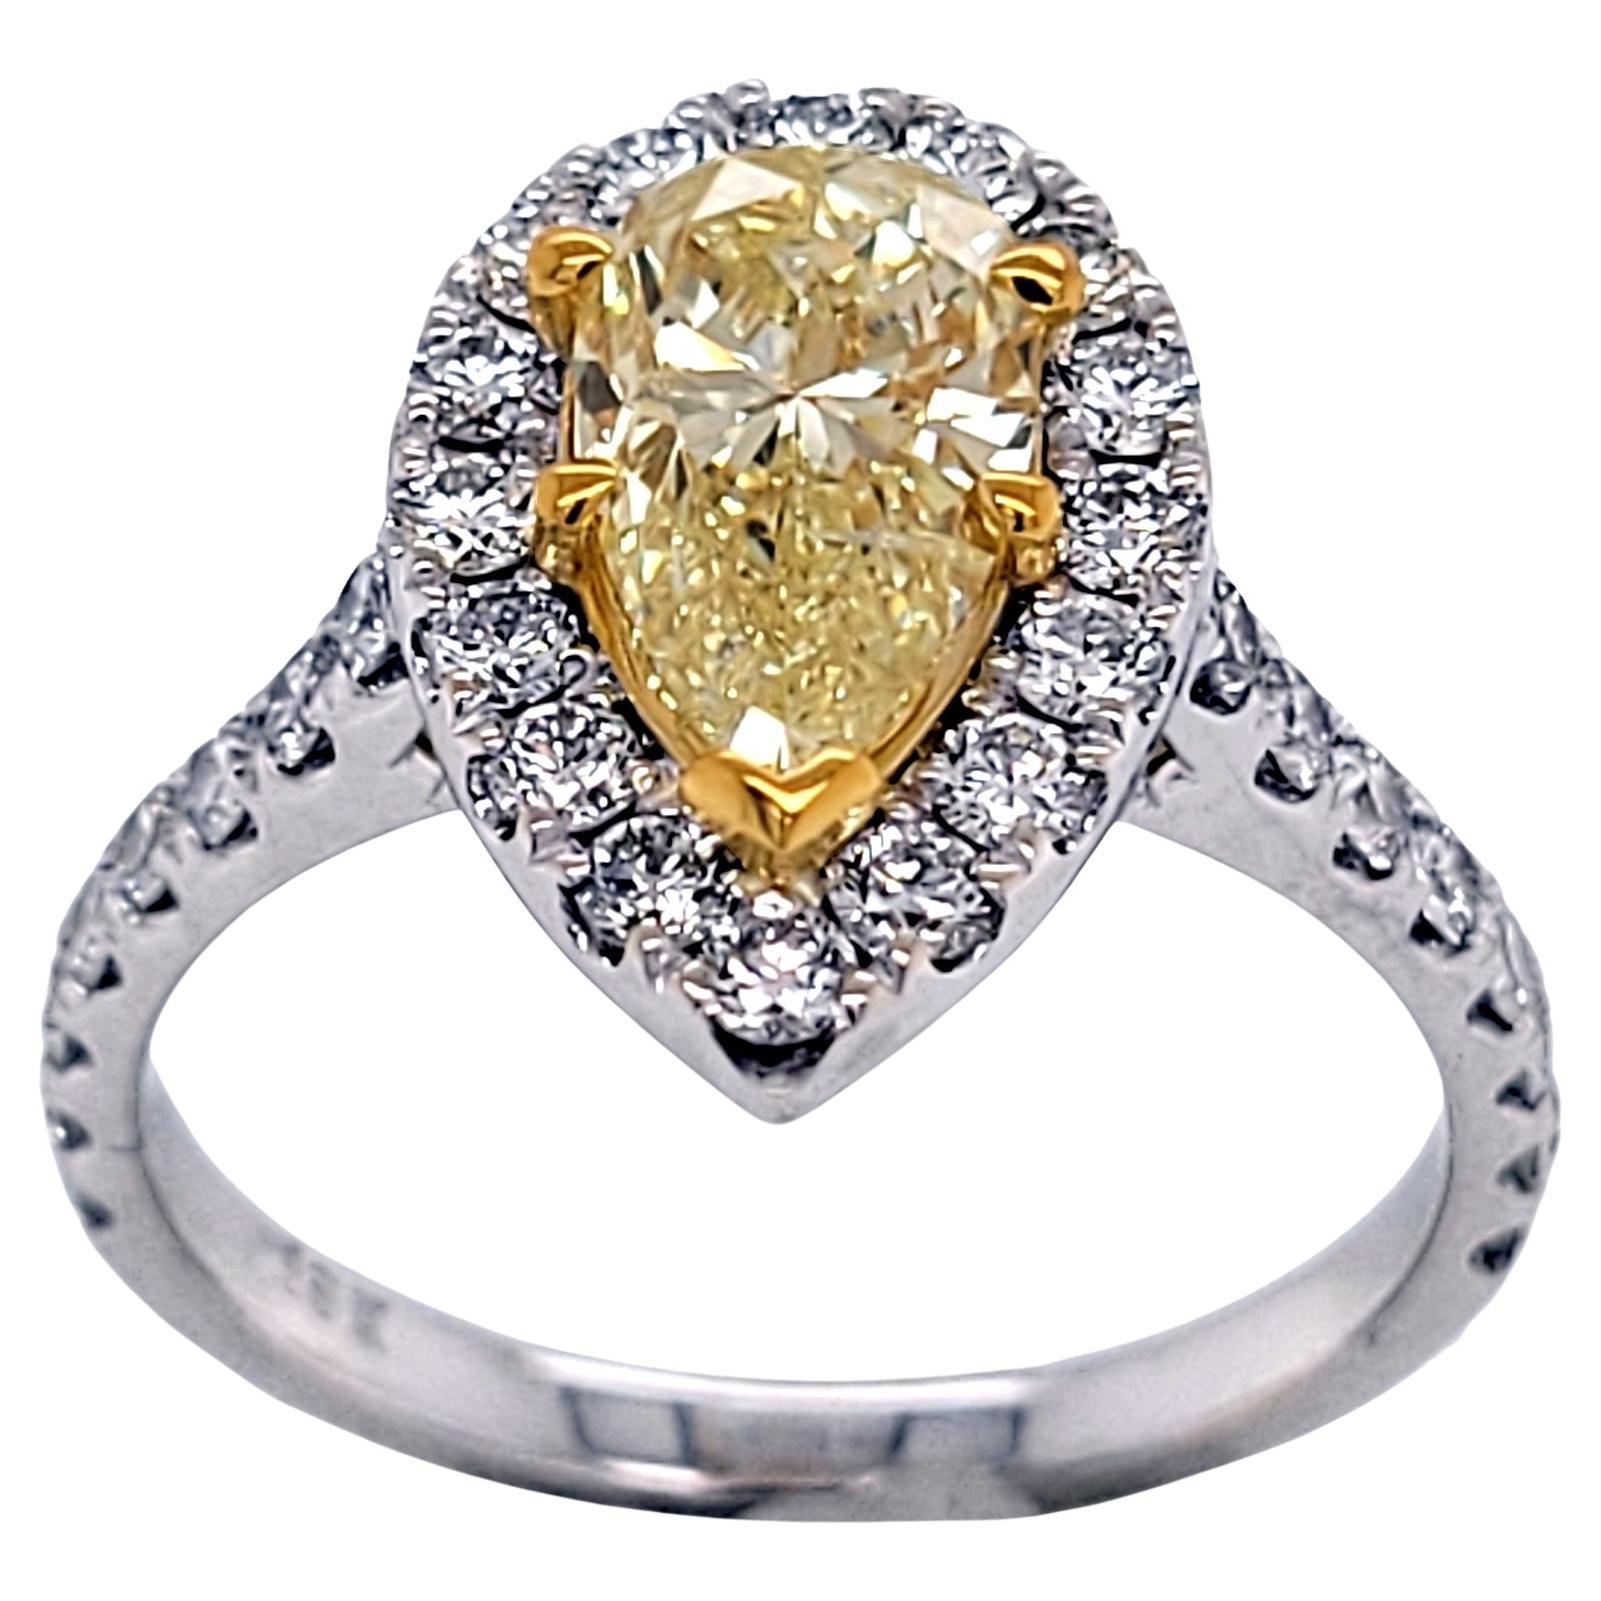 Bague en or 18 carats en forme de poire jaune clair fantaisie de 1,20 carat, certifiée GIA, avec halo